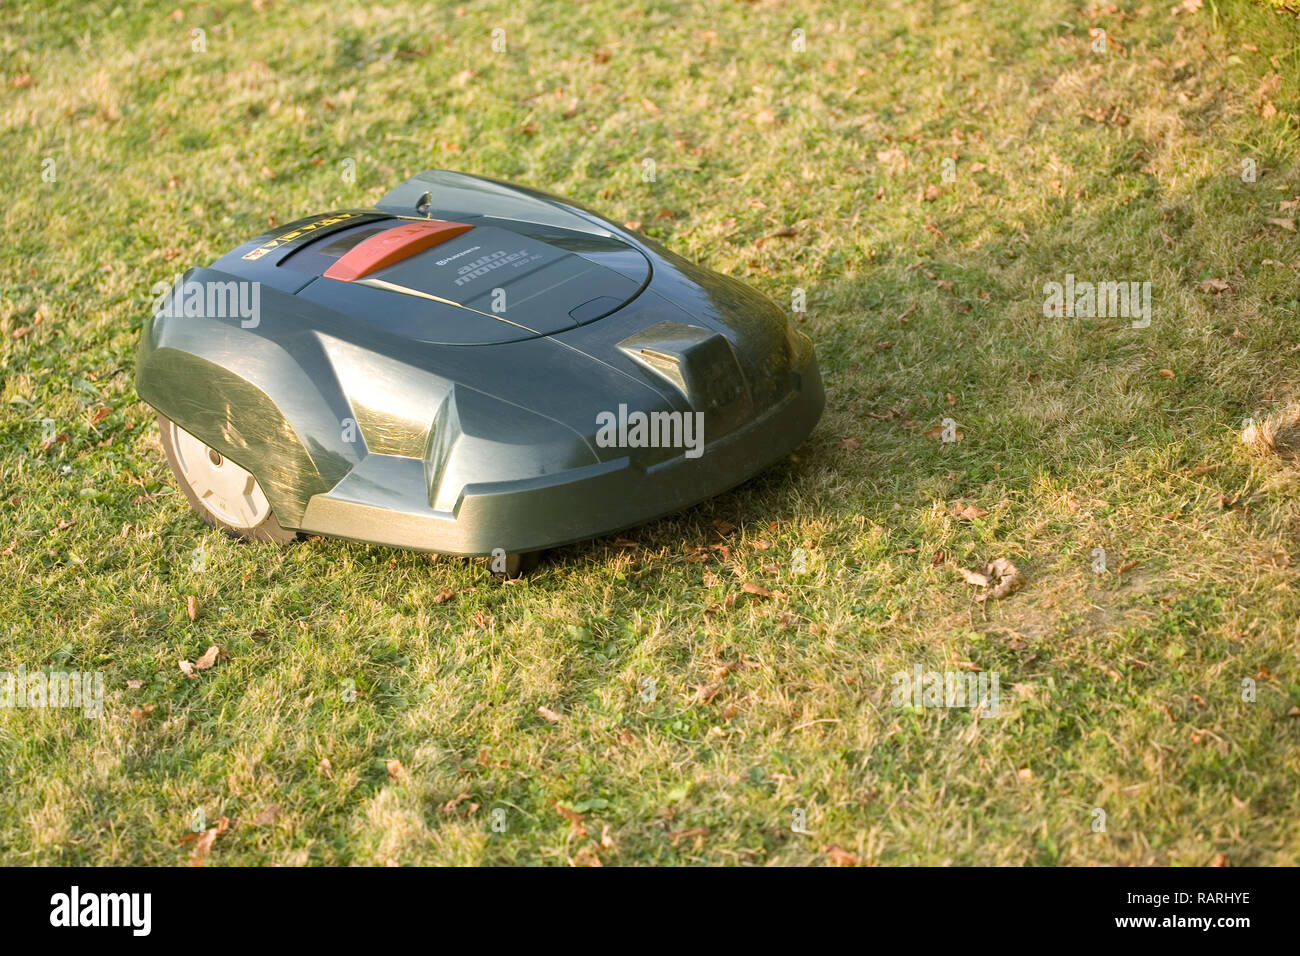 Tondeuse robot automatique coupé de l'herbe à partir d'un point de vue position latérale Banque D'Images